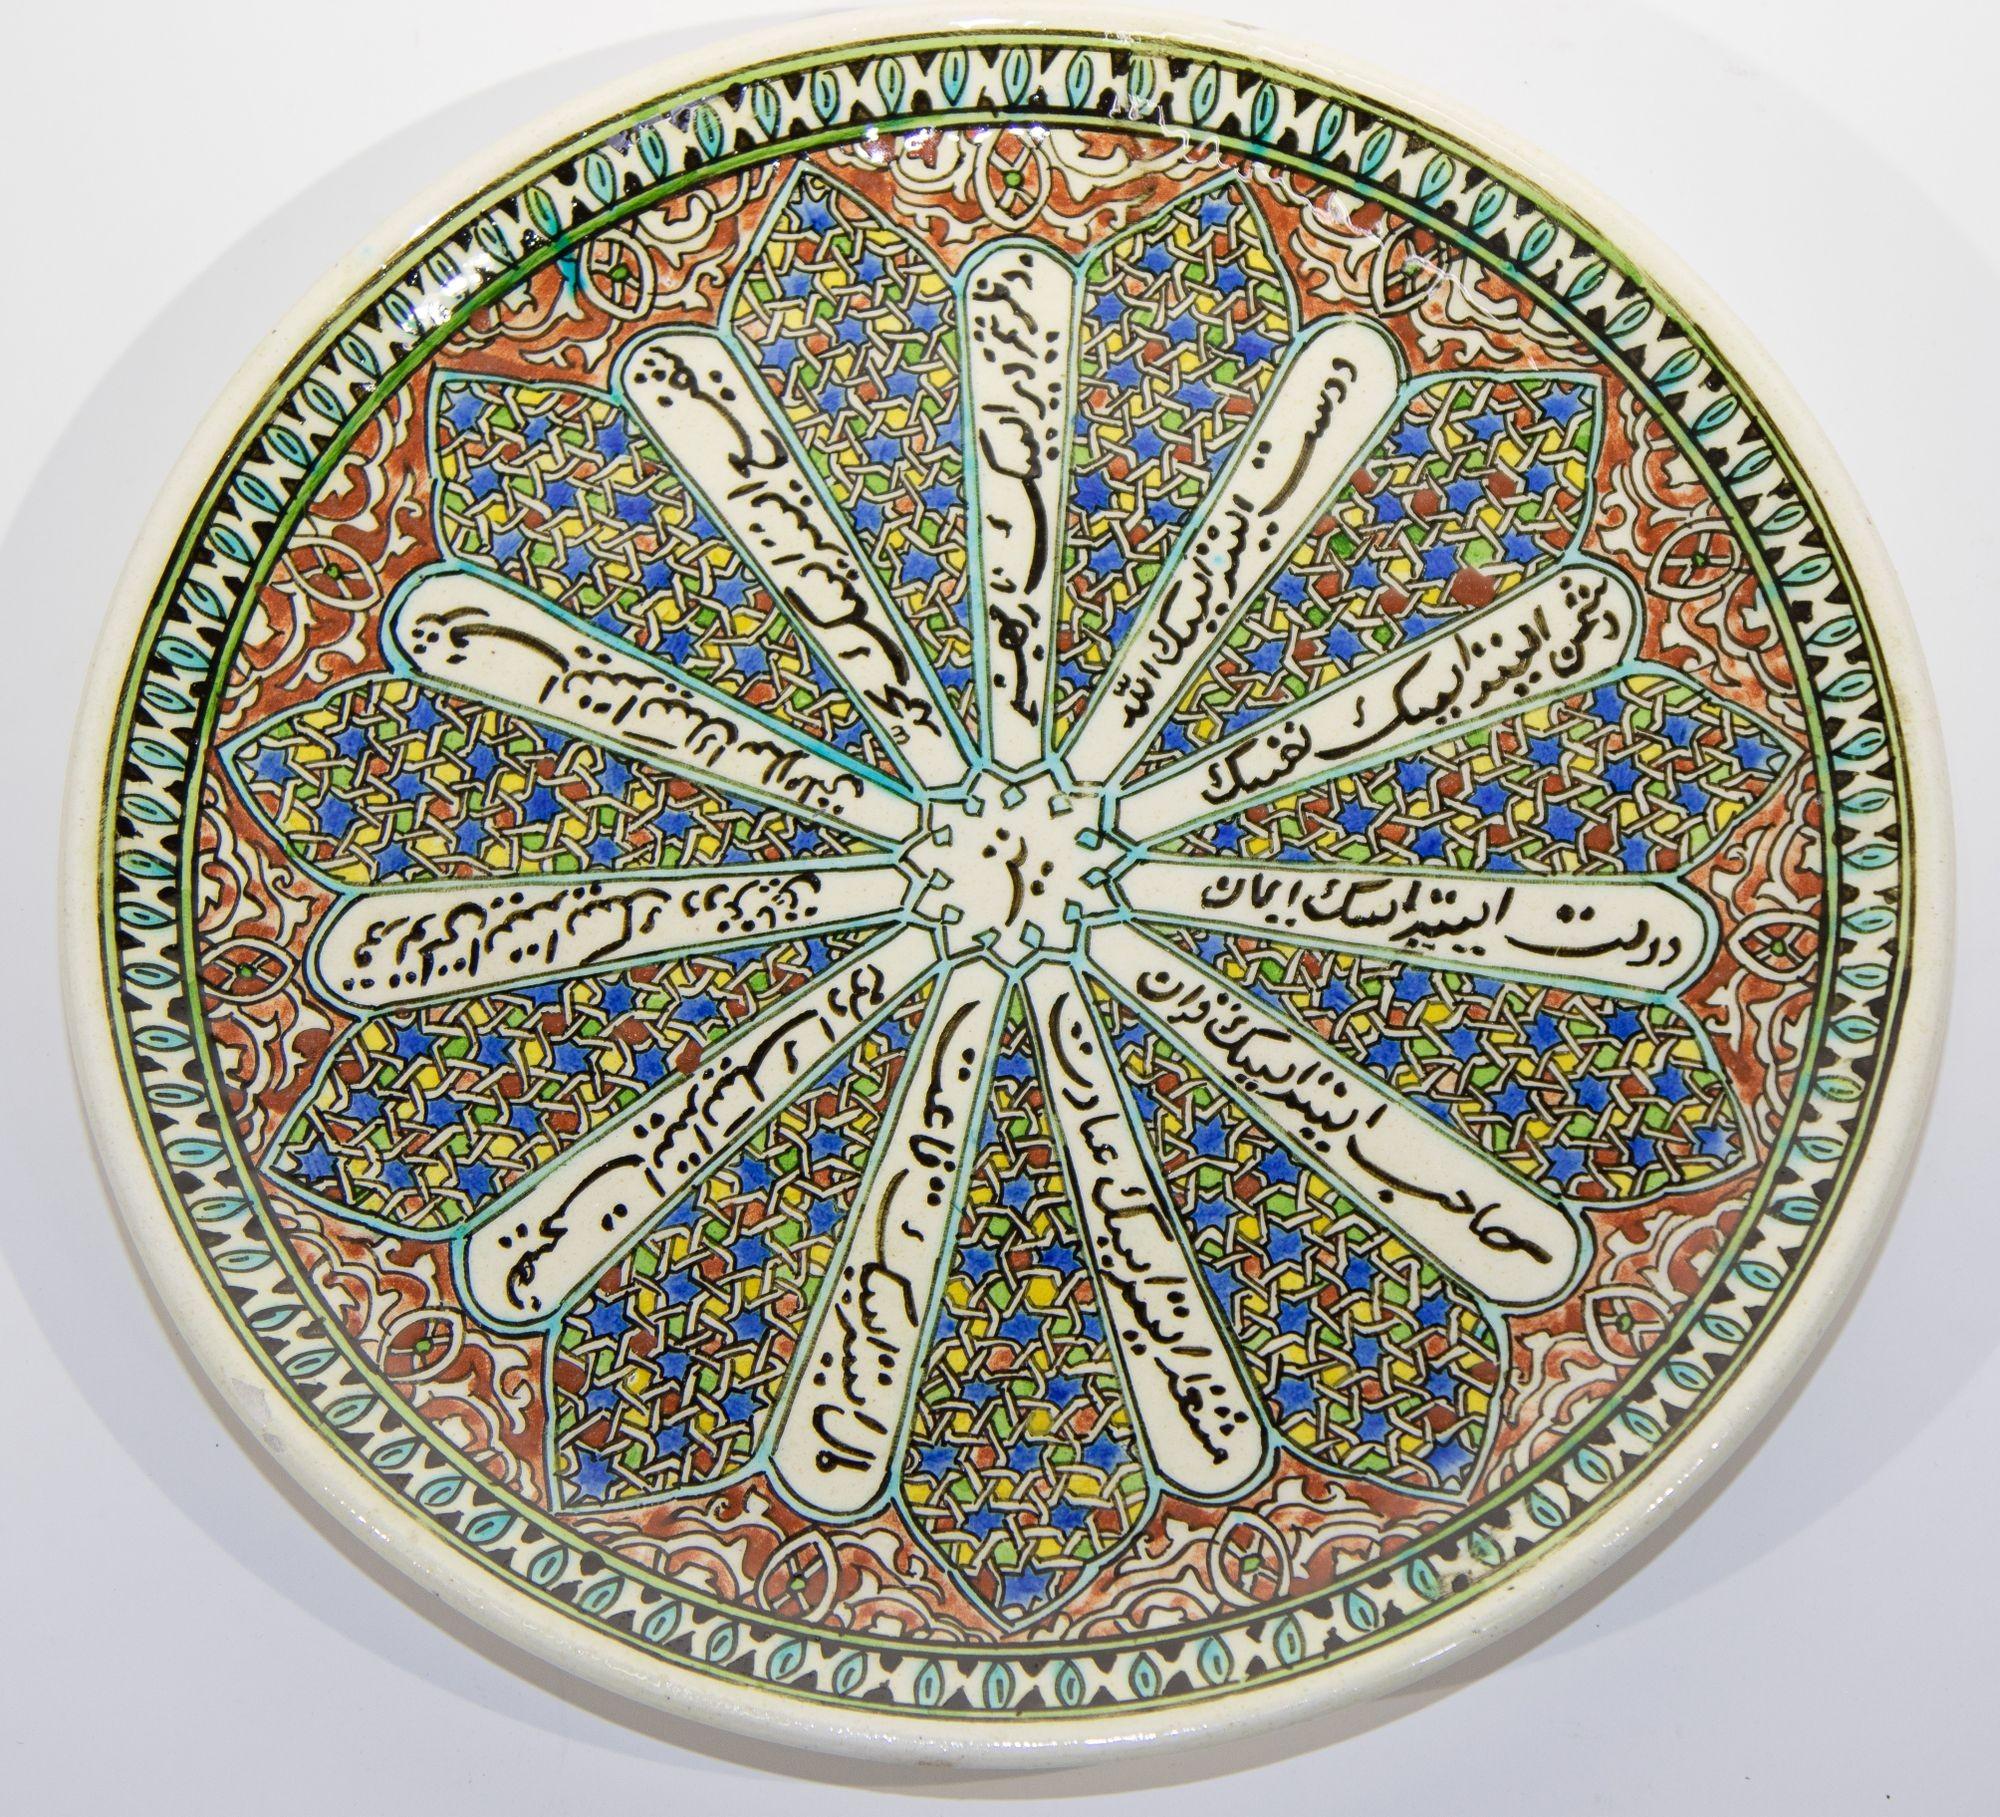 Plateau Kutahya en céramique polychrome turque peinte à la main. Vers les années 1950.
Assiette décorative murale en céramique turque Kutahya, peinte et fabriquée à la main, avec un motif géométrique ottoman polychrome et une calligraphie